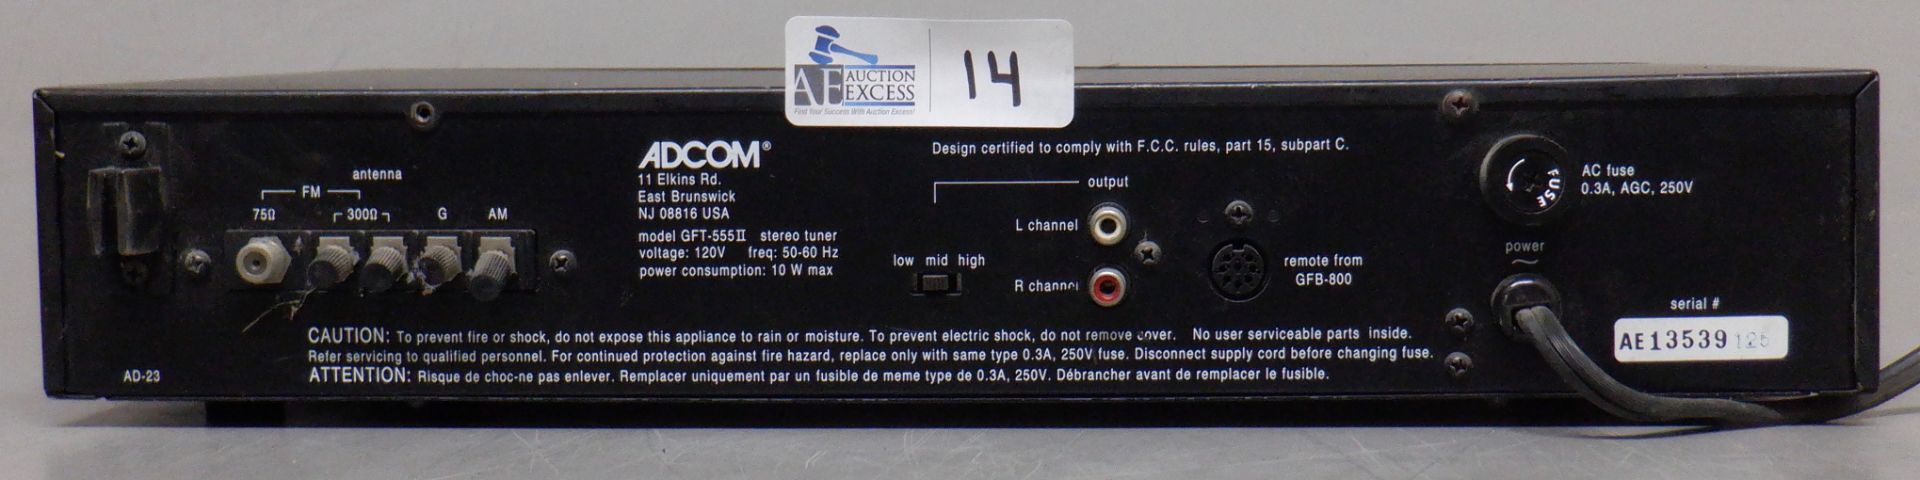 ADCOM GFT-555II TUNER - Image 2 of 2